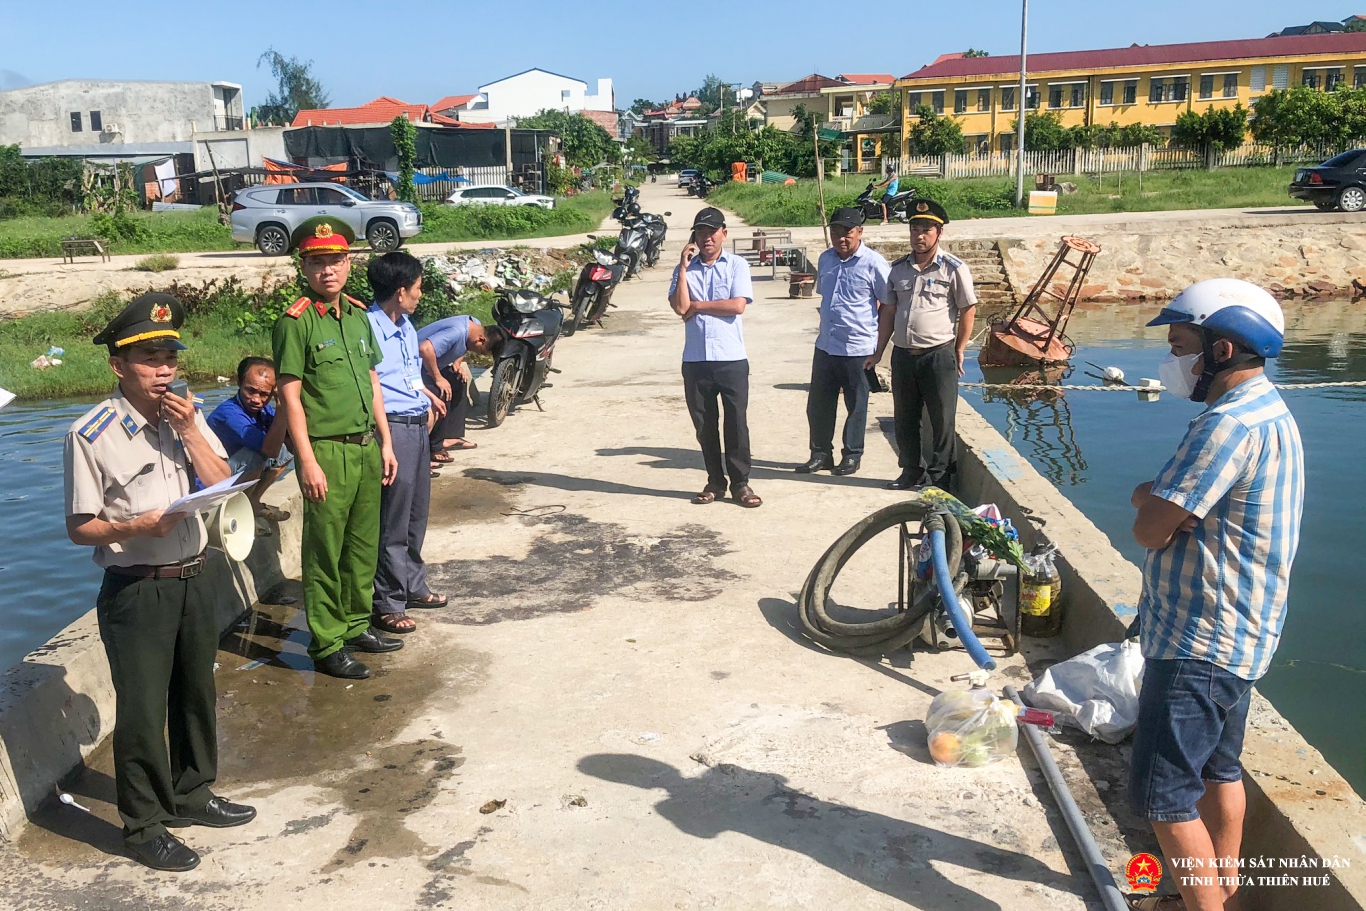 Chấp hành viên Chi cục thi hành án dân sự huyện Phú Lộc đang thực hiện nhiệm vụ